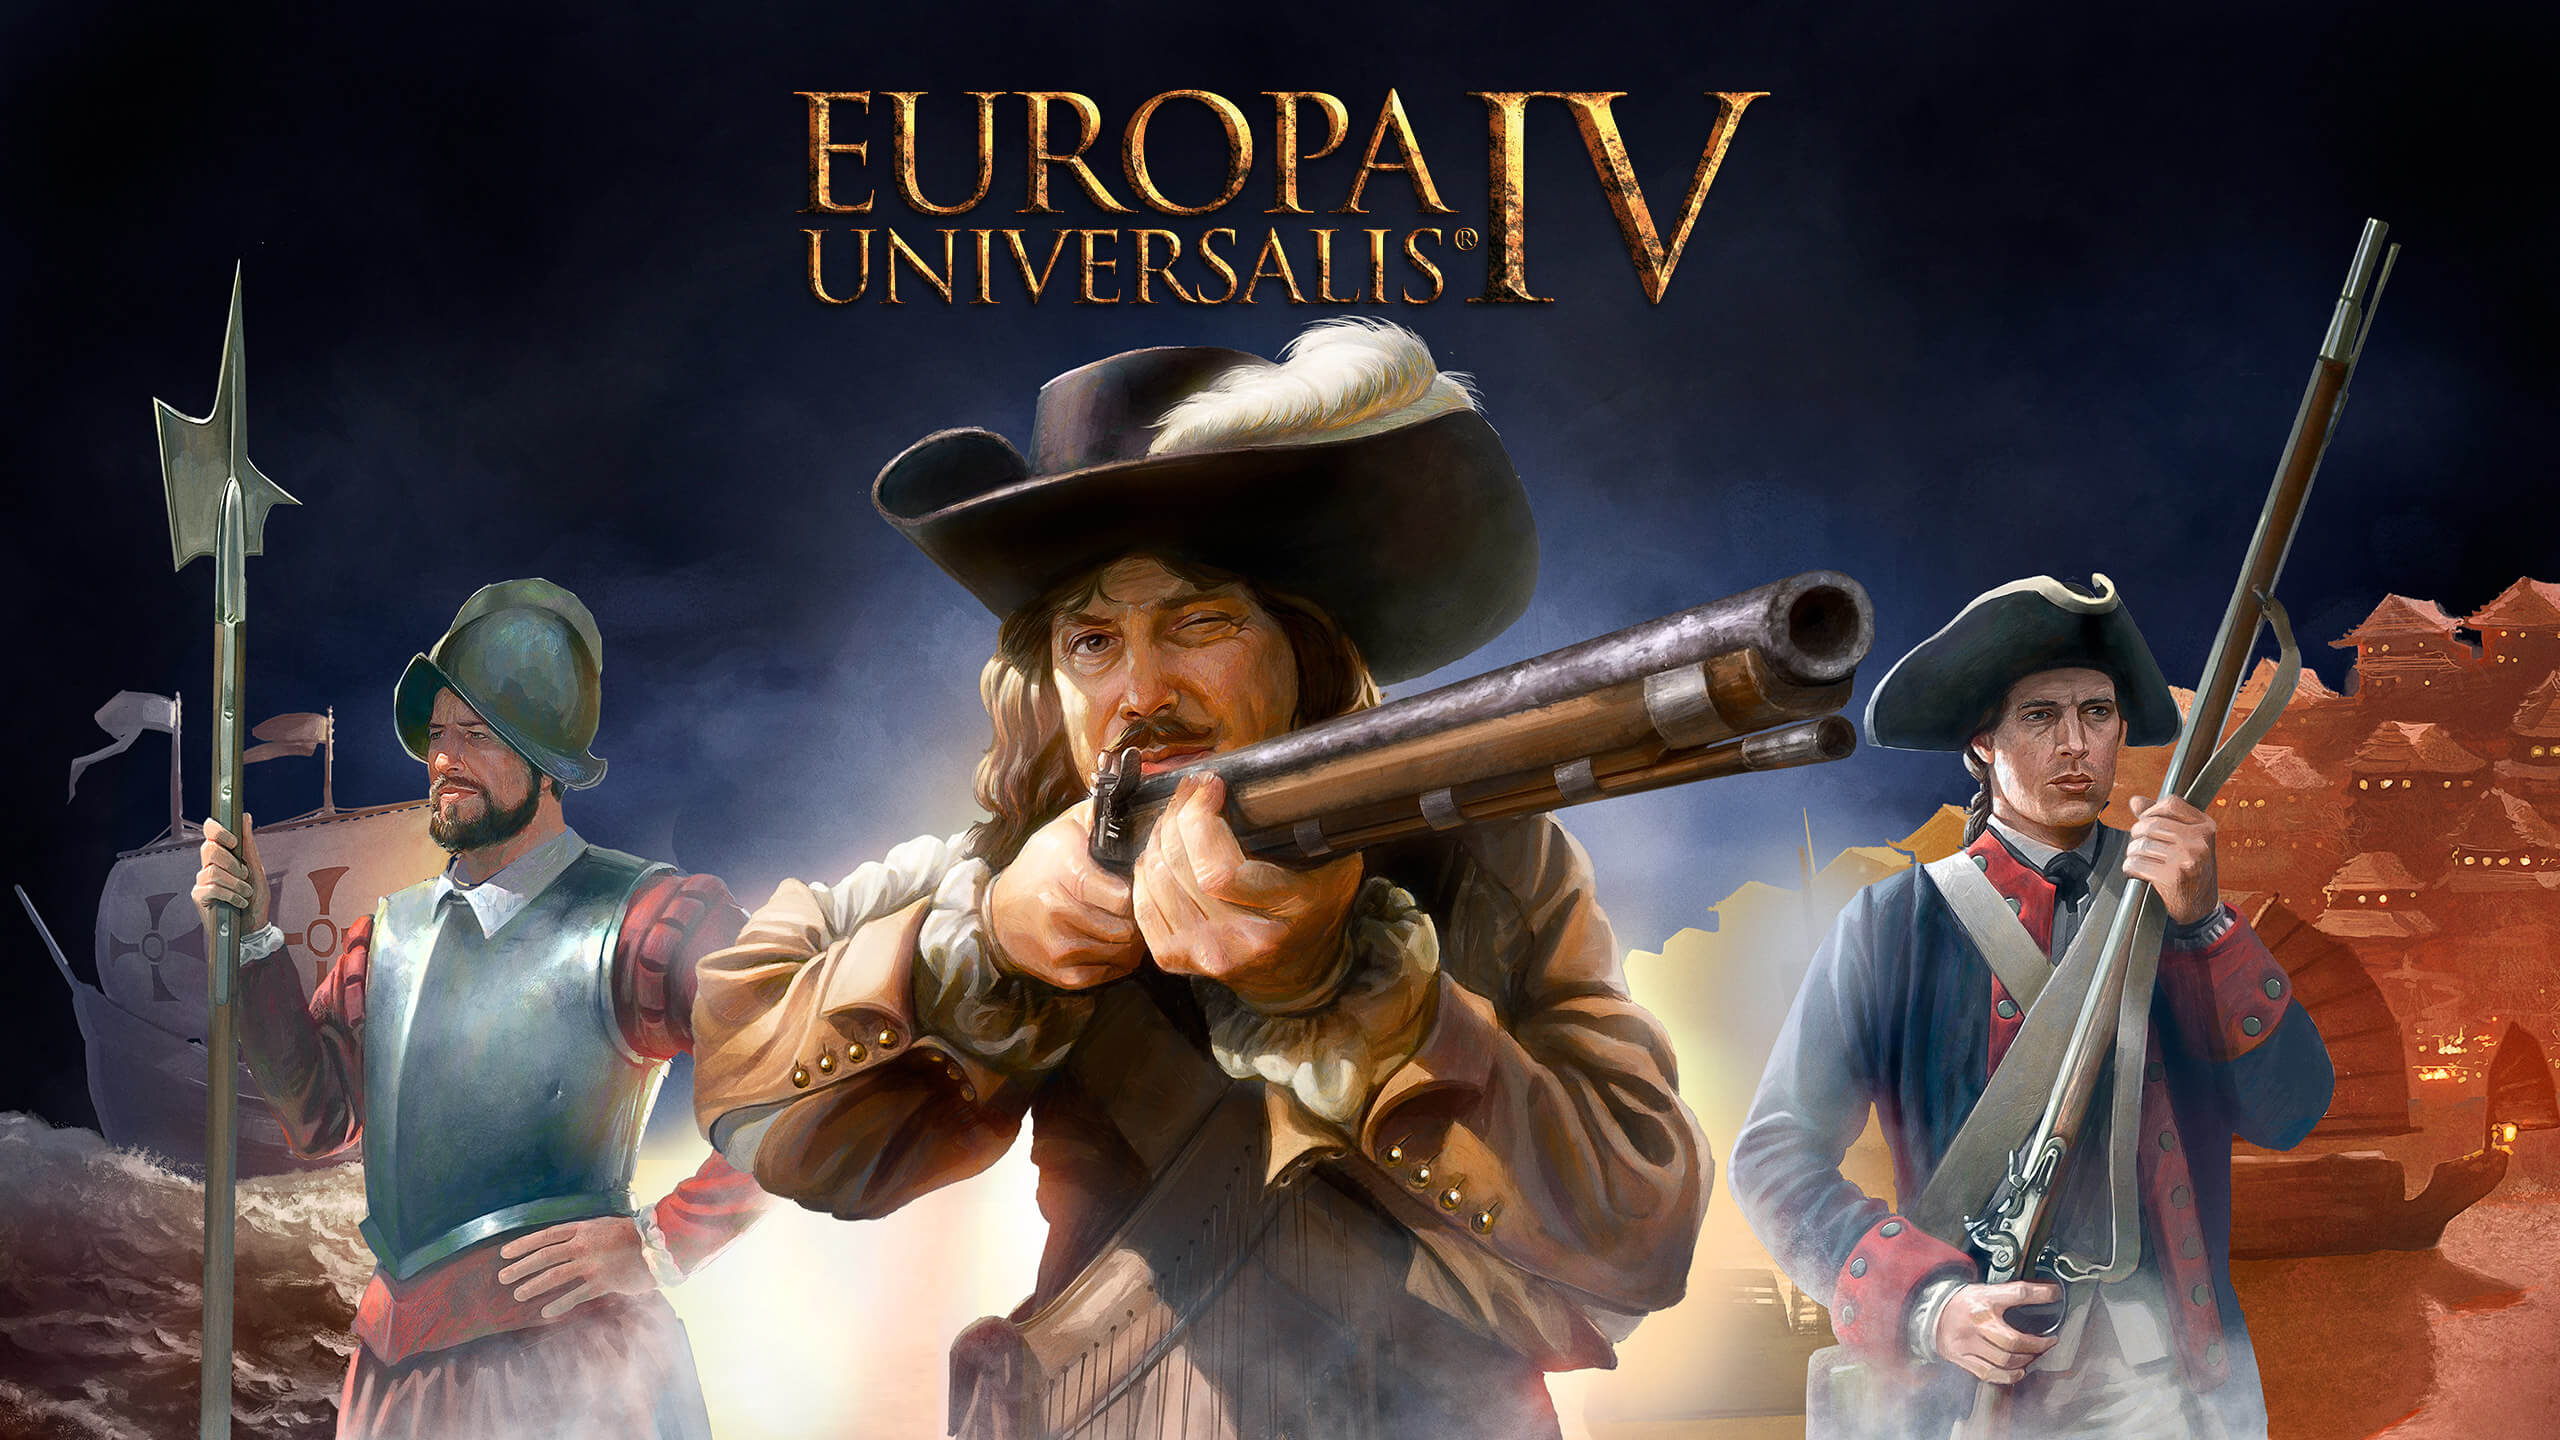 europa universalis 4 mac download free